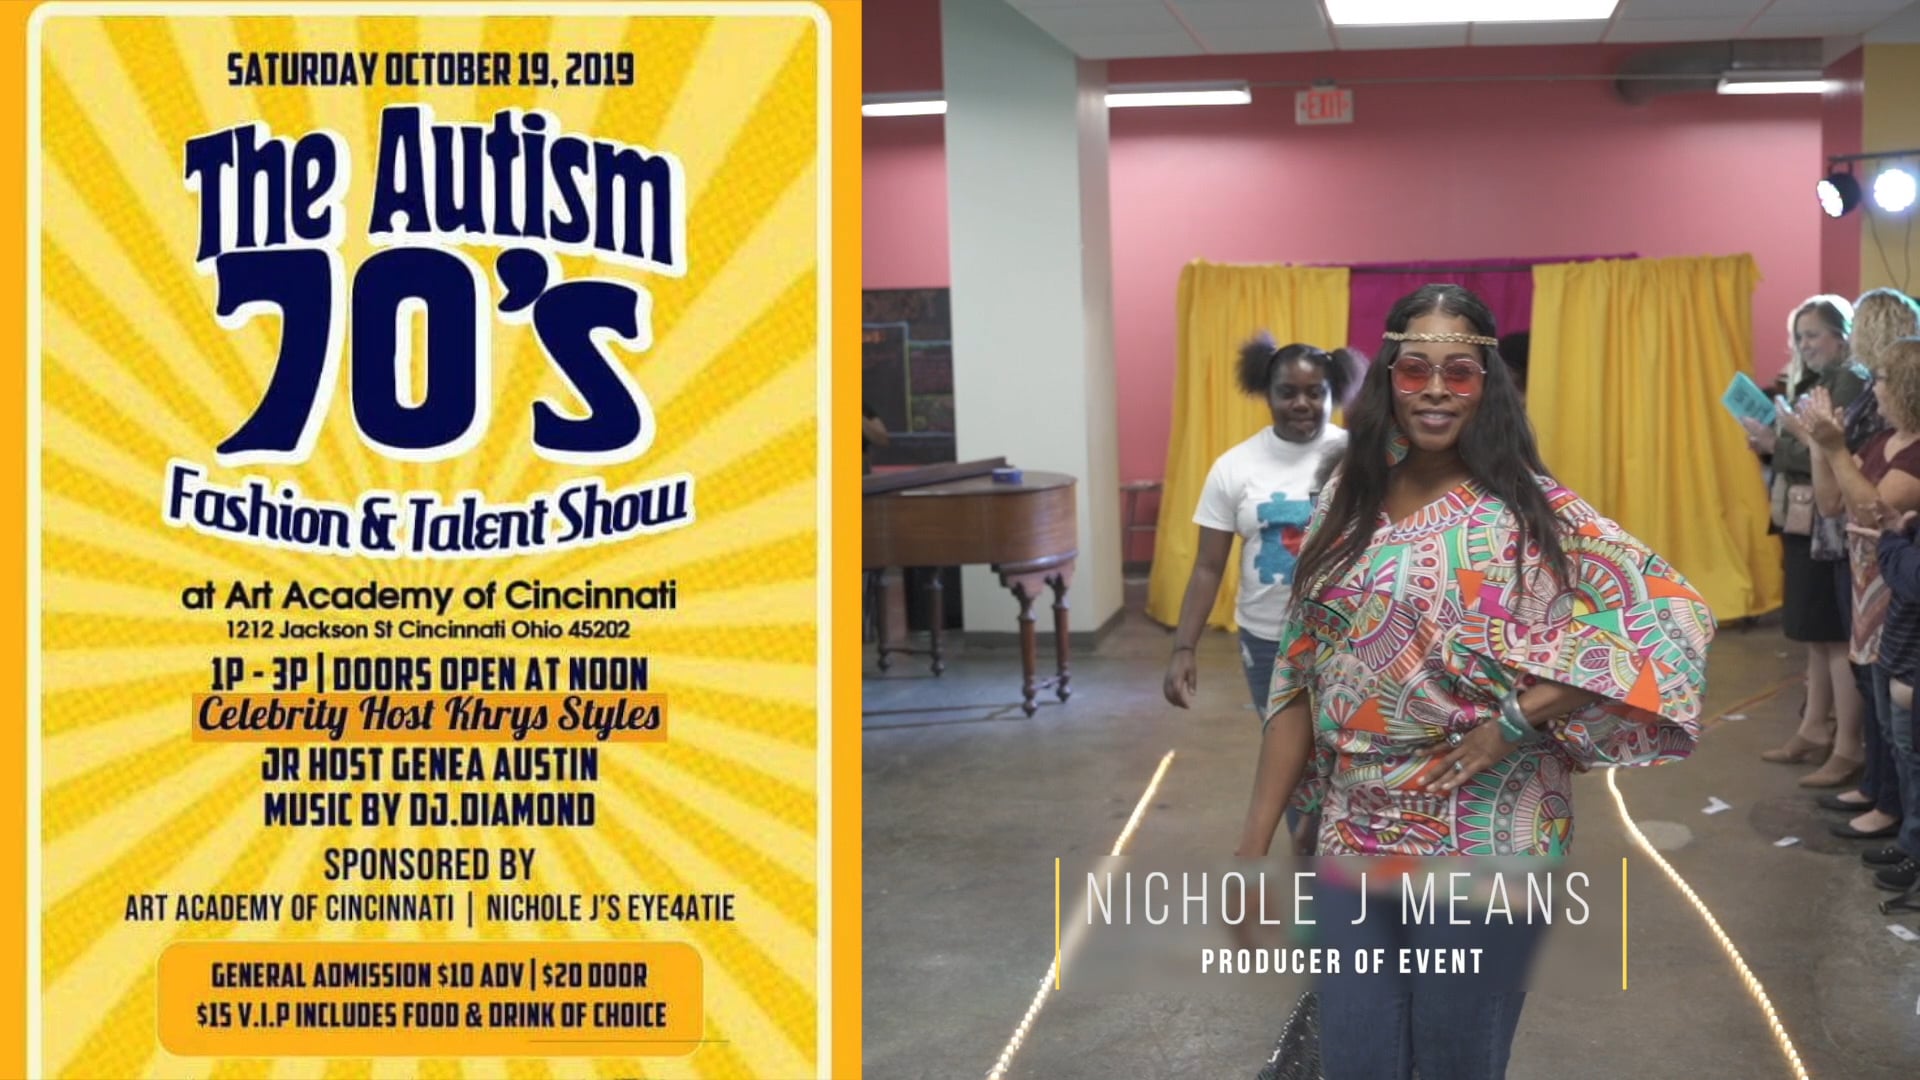 The Autism 70s Fashion & Talent Show*